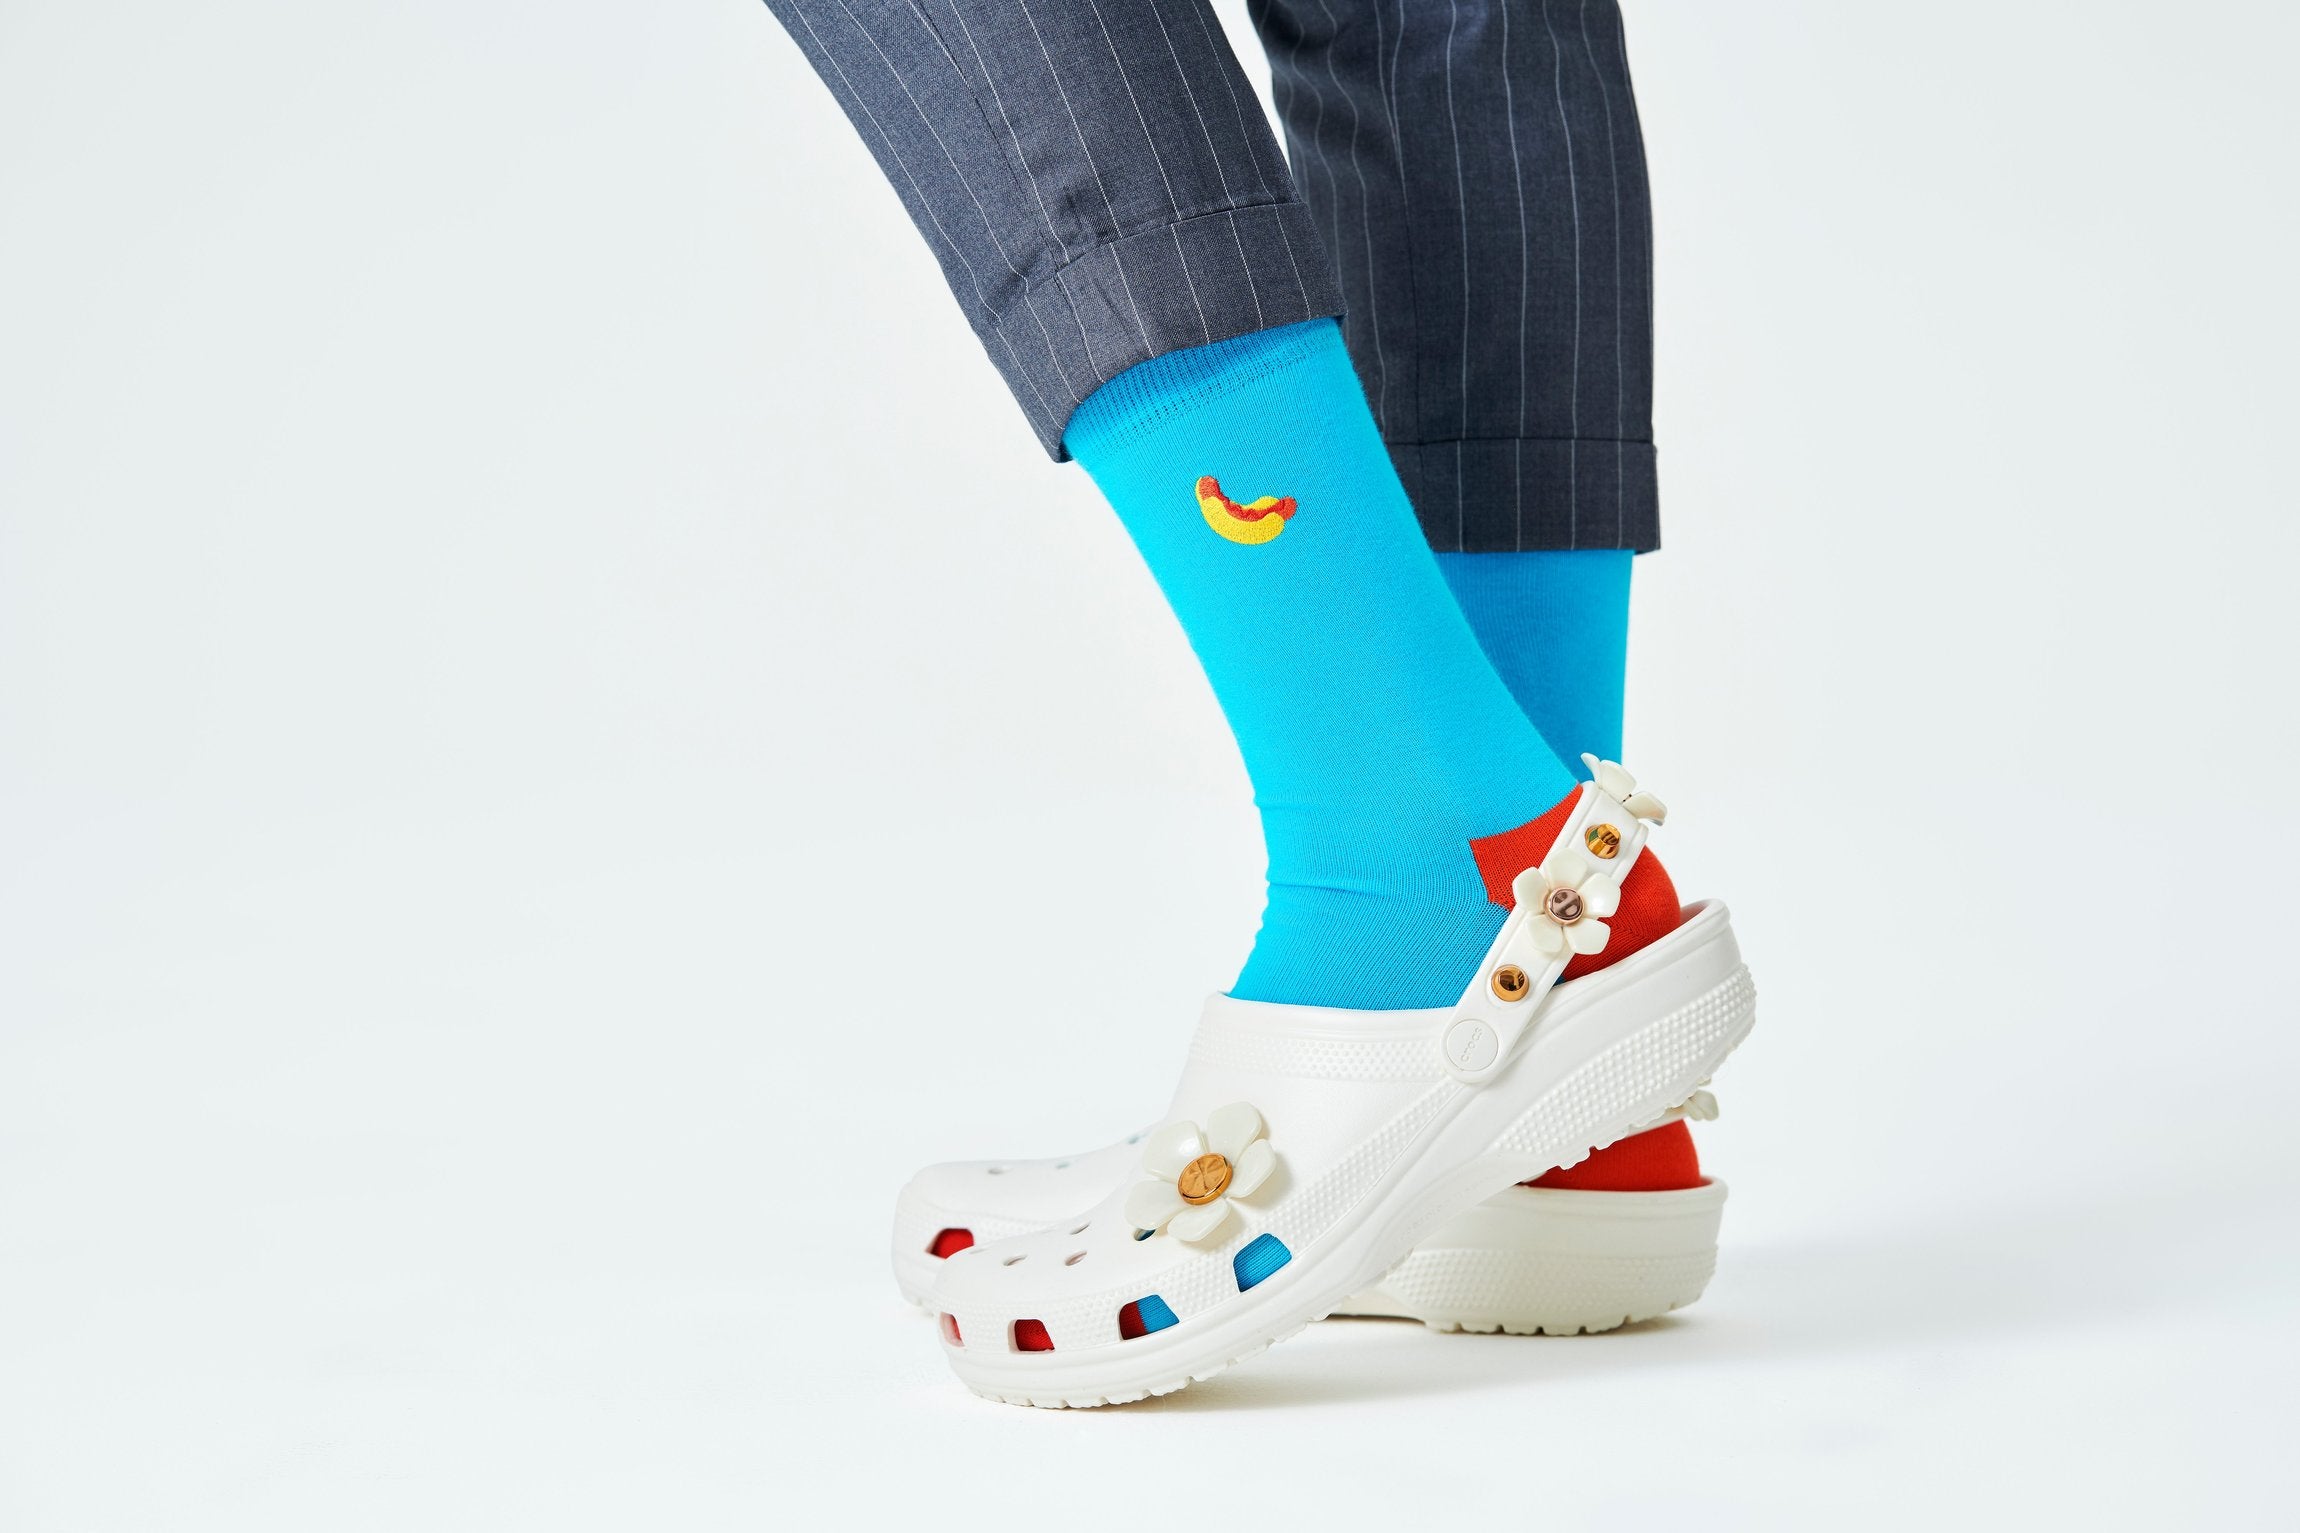 Modré ponožky Happy Socks s vyšitým párkom v rožku, vzor Hot Dog